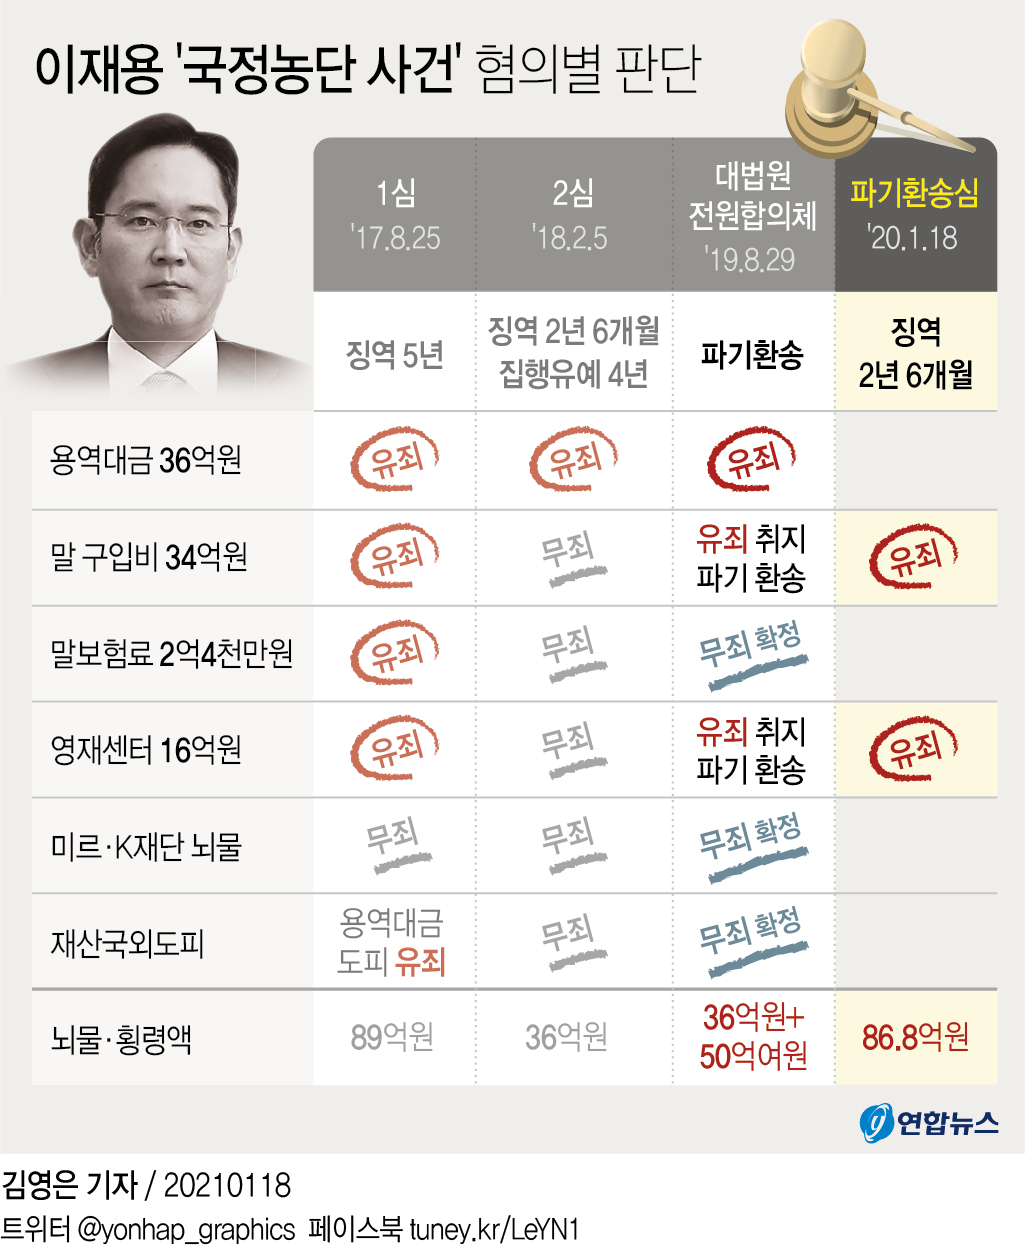 [그래픽] 이재용 '국정농단 사건' 혐의별 판단